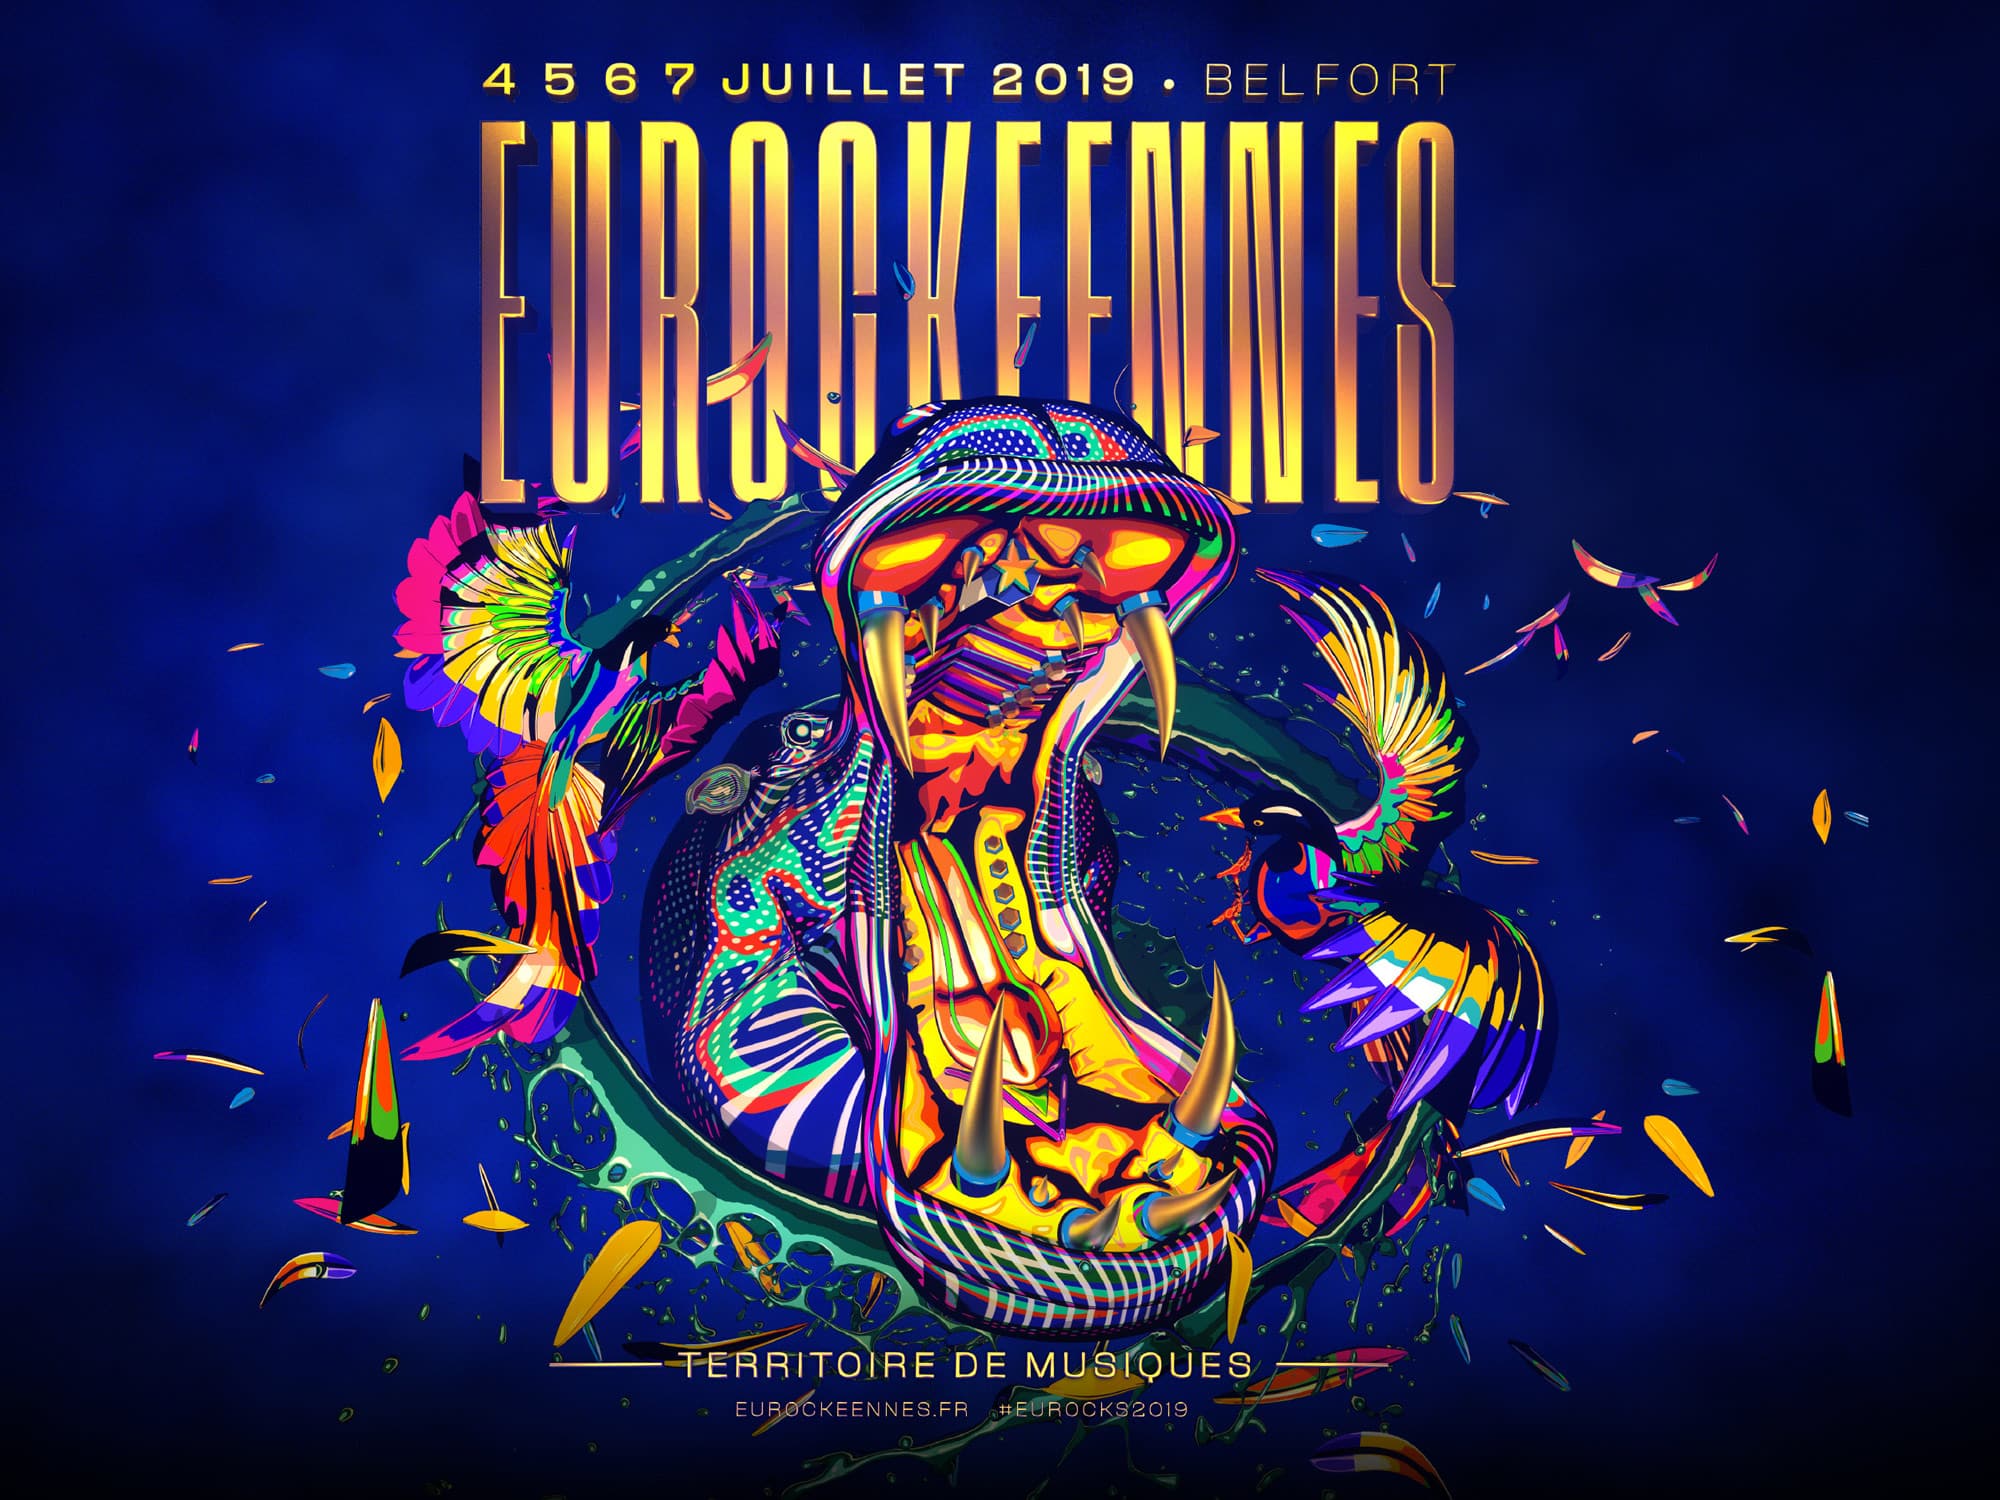 Contacter le festival Les Eurockéennes par téléphone et par email - Contacter les EUROCKÉENNES | Joindre le festival #Eurockéennes